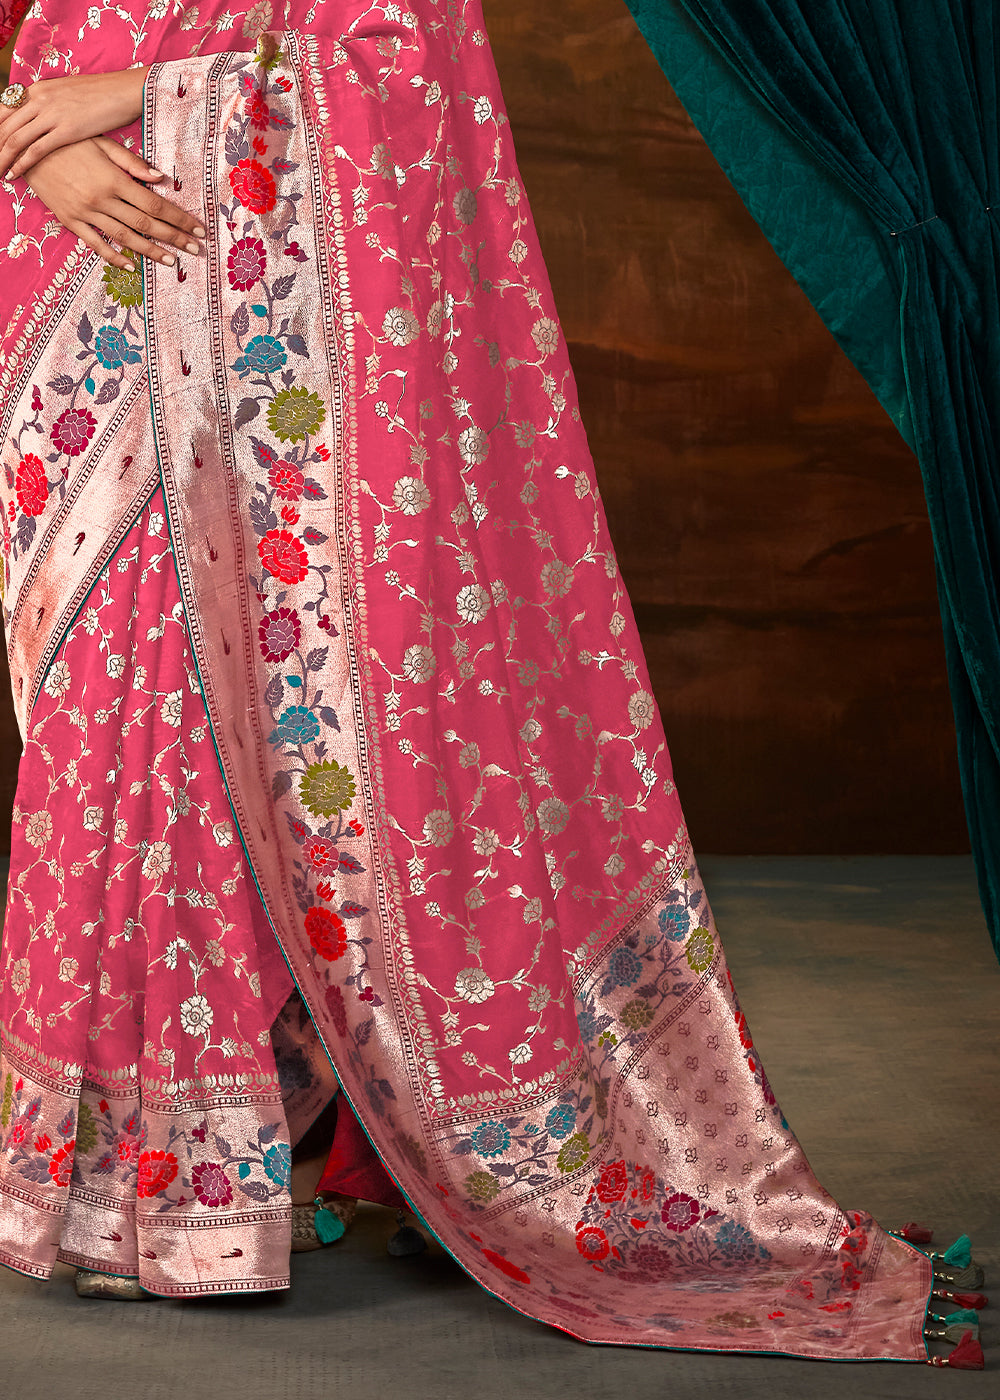 French Rose Pink Paithani Banarasi Silk Saree having Resham Woven Floral Motifs